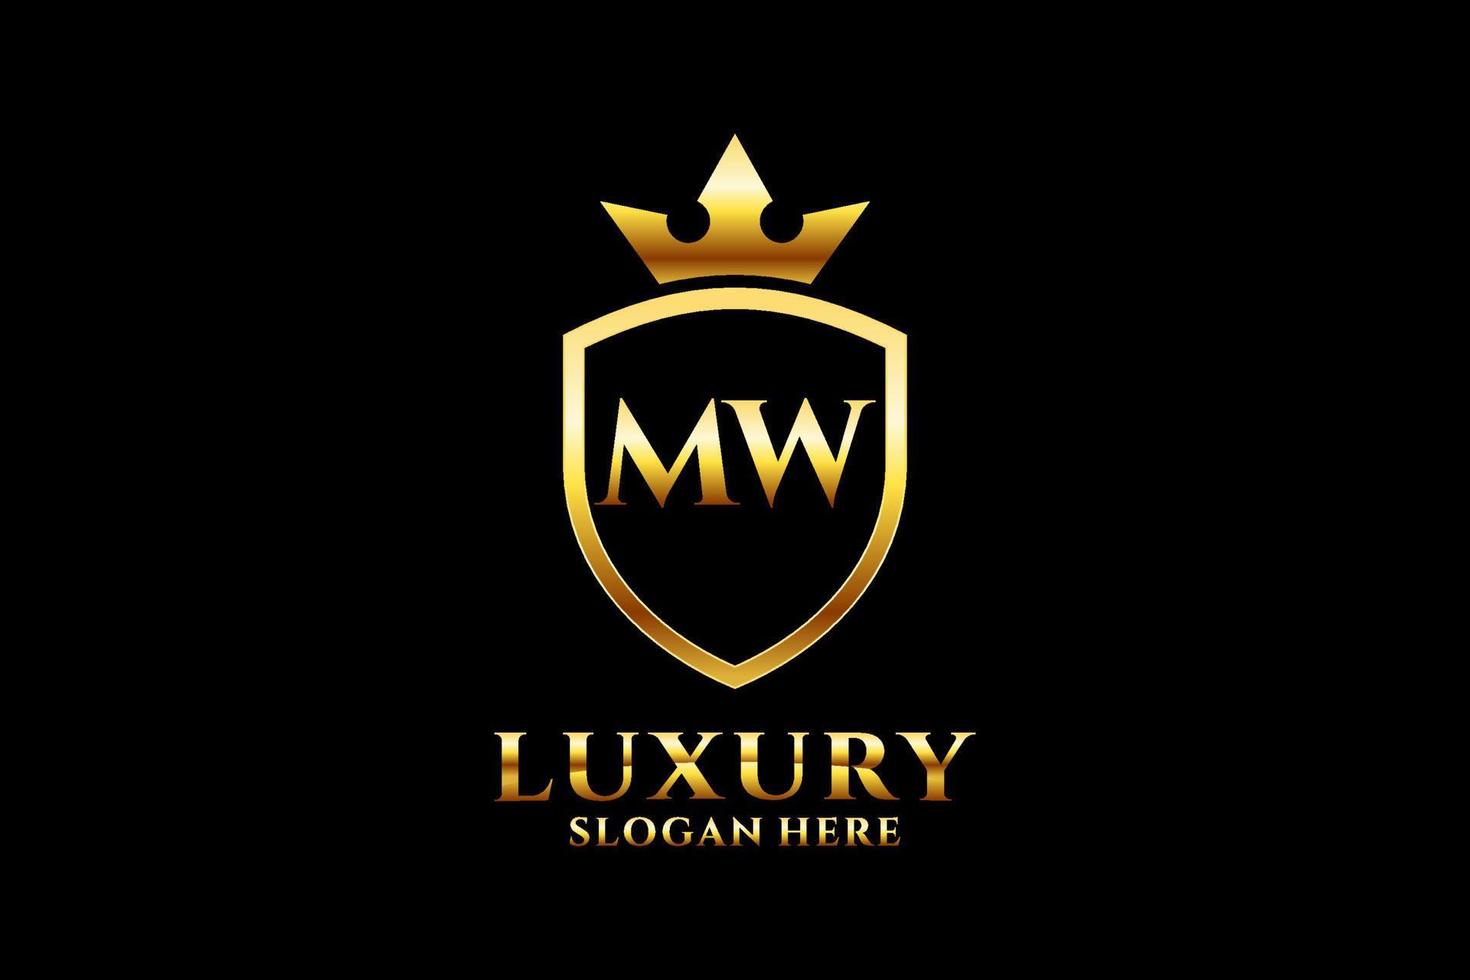 logotipo de monograma de lujo inicial mw elegante o plantilla de placa con pergaminos y corona real - perfecto para proyectos de marca de lujo vector